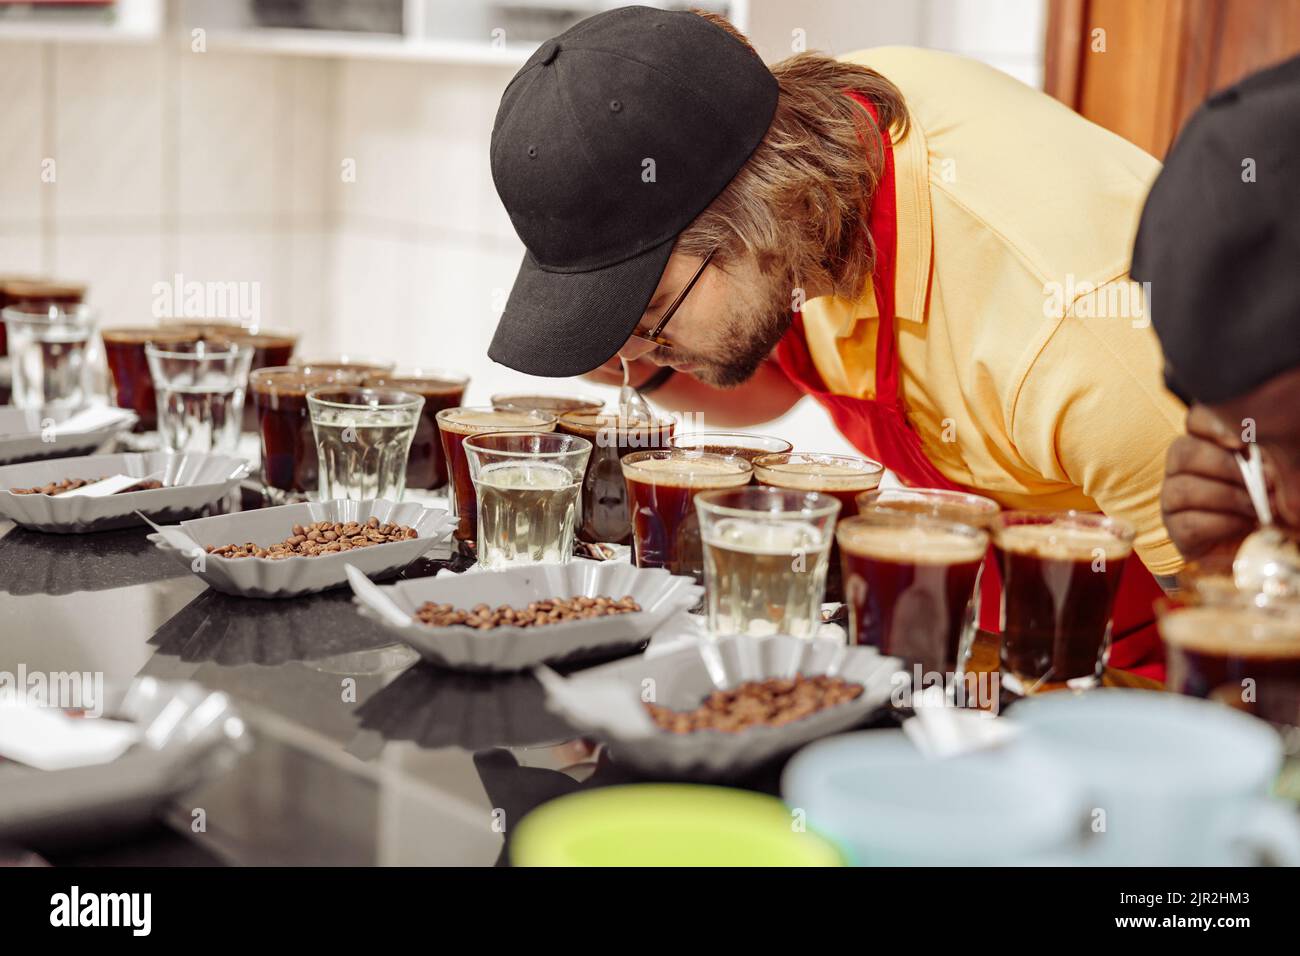 Un employé de sexe masculin goûtant du café et sentant l'arôme de nombreuses tasses Banque D'Images